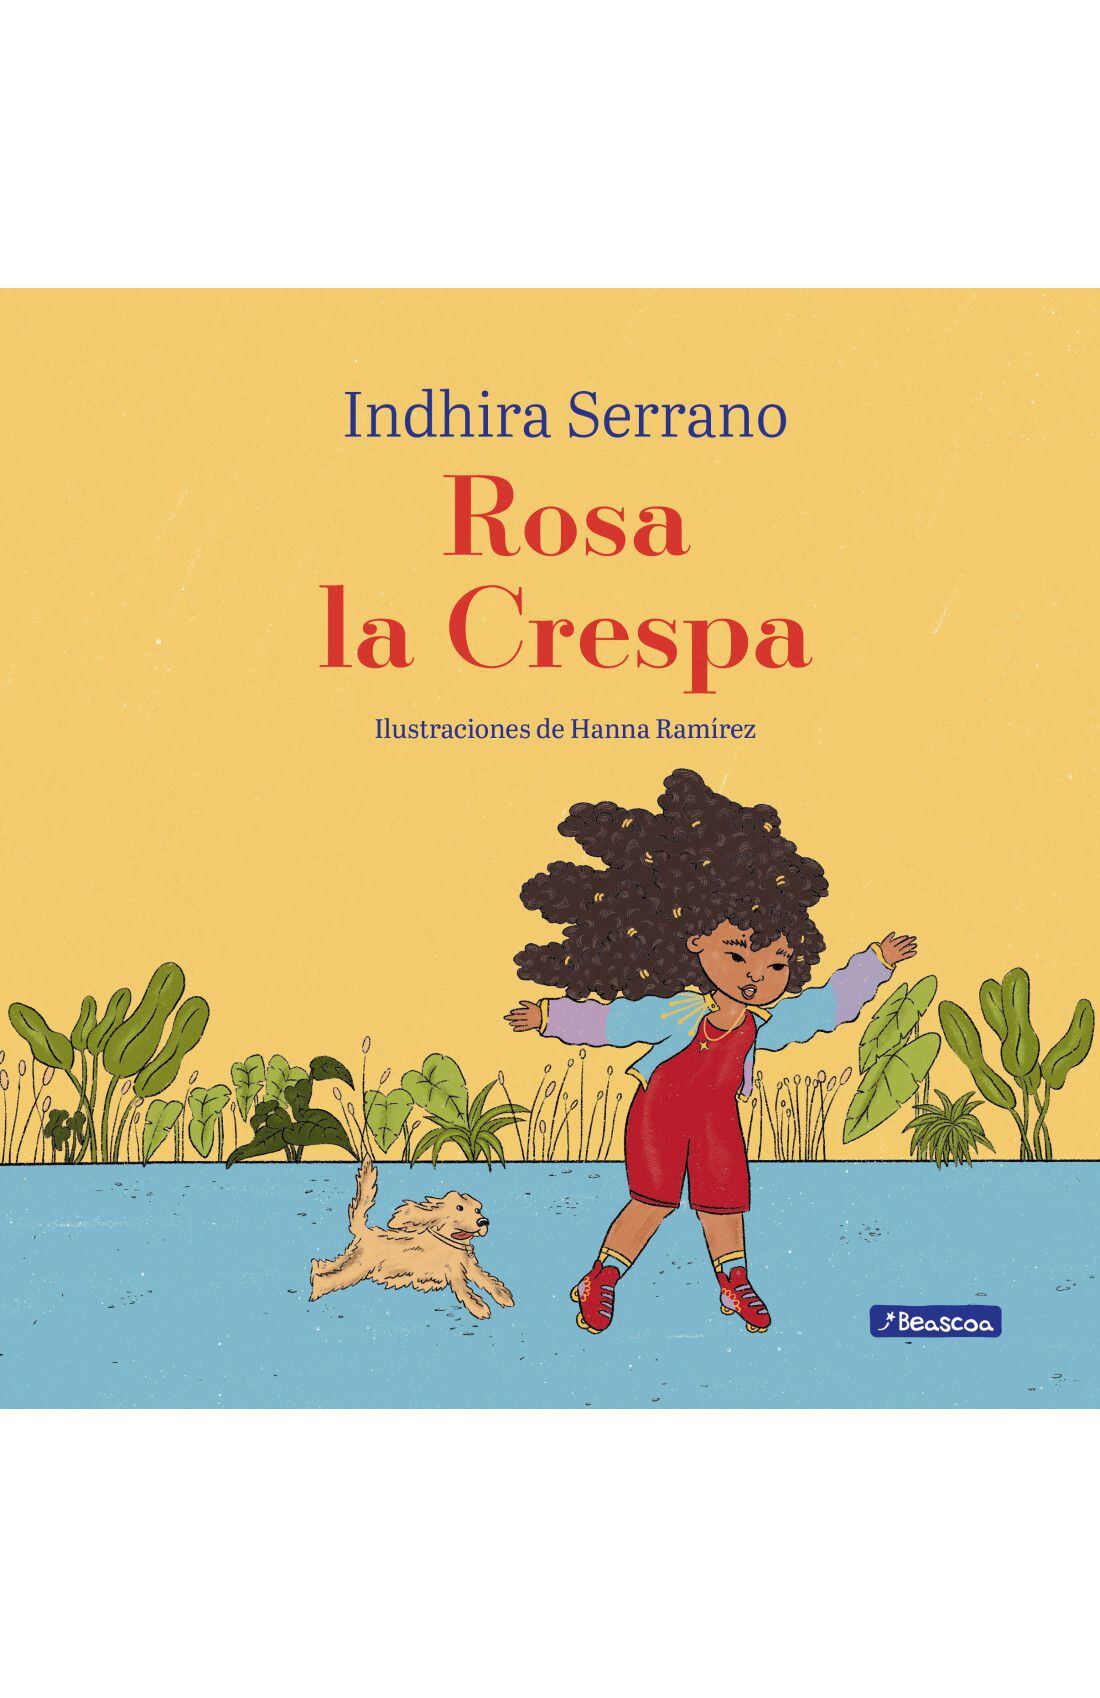 Portada del libro "Rosa la Crespa", de Indhira Serrano.